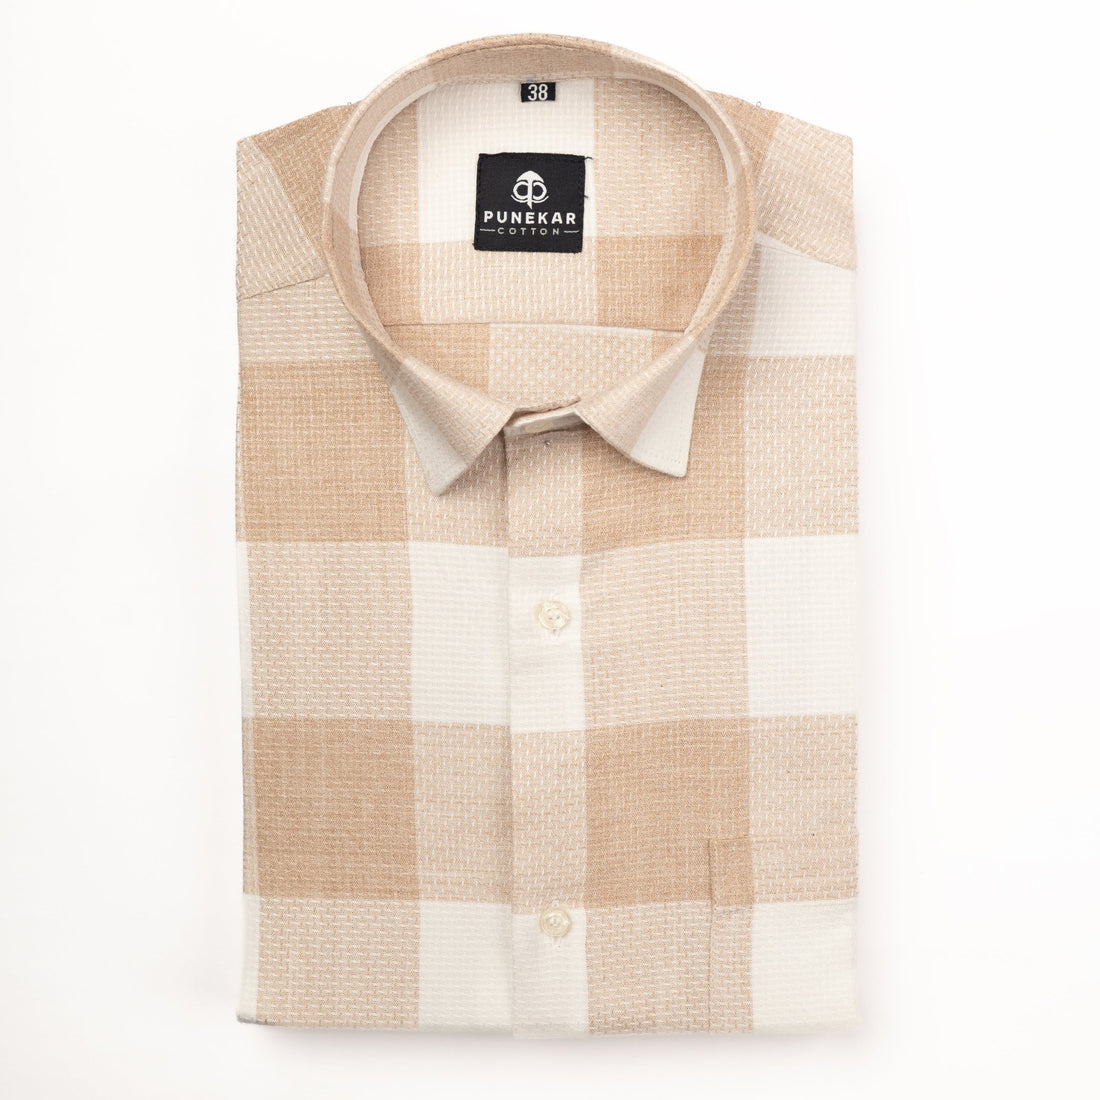 Tan Color Checks Pure Cotton Shirt For Men - Punekar Cotton